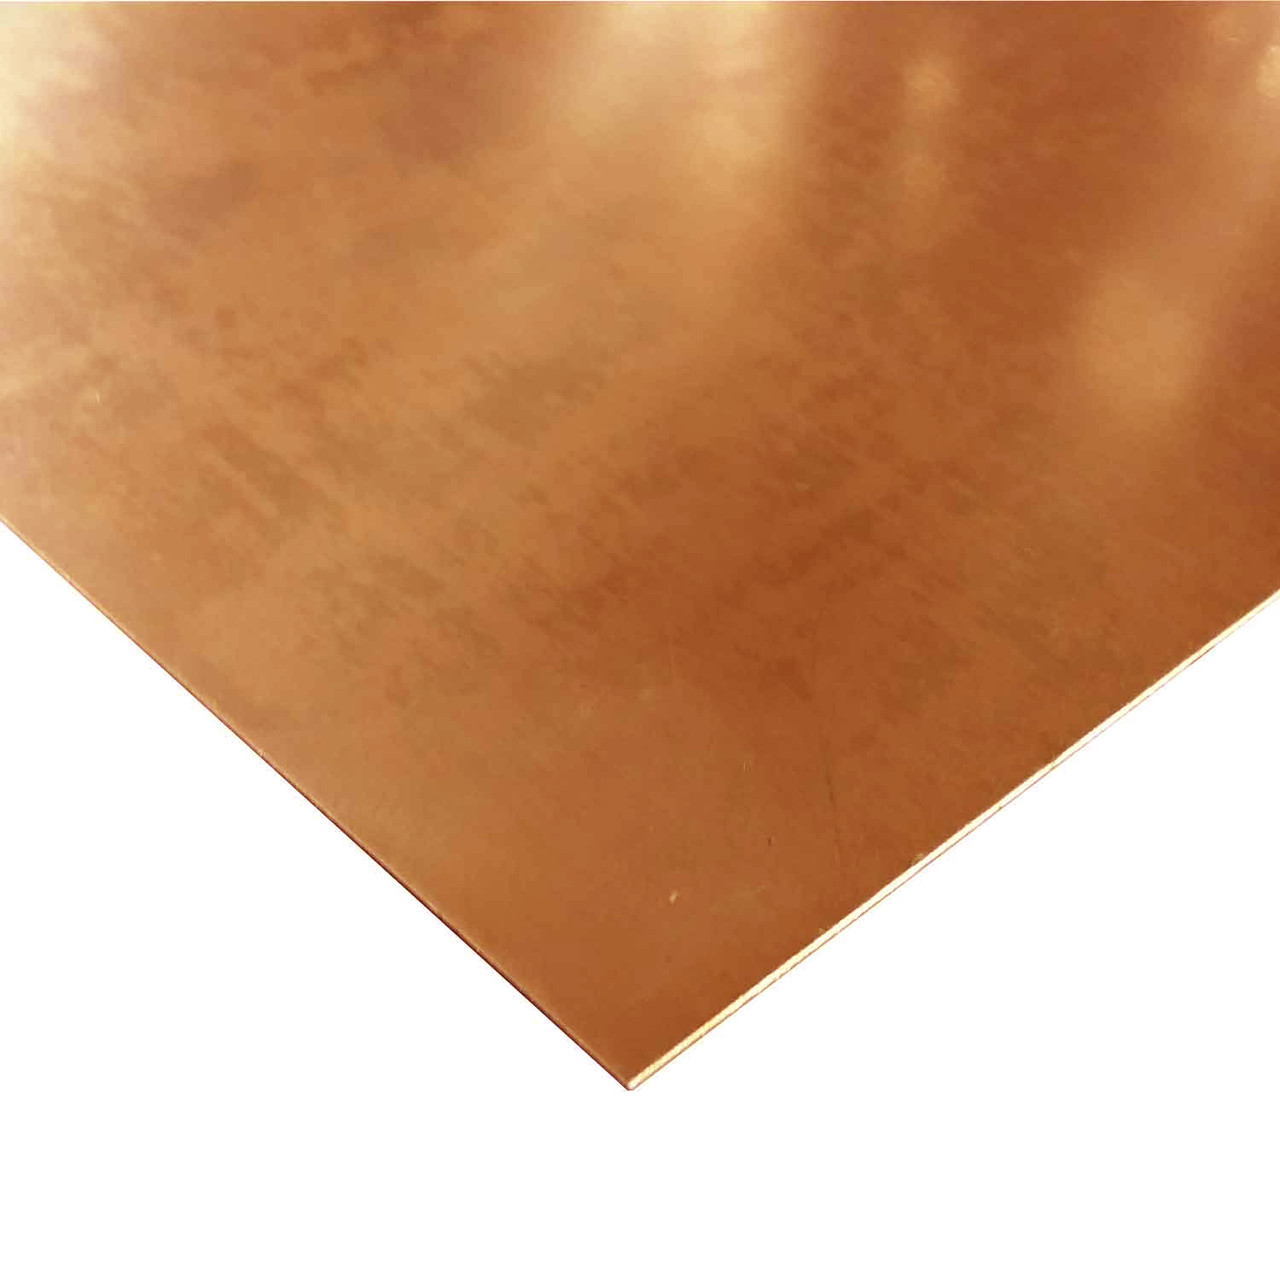 0.040" x 4" x 24", C110-H02 Copper Sheet